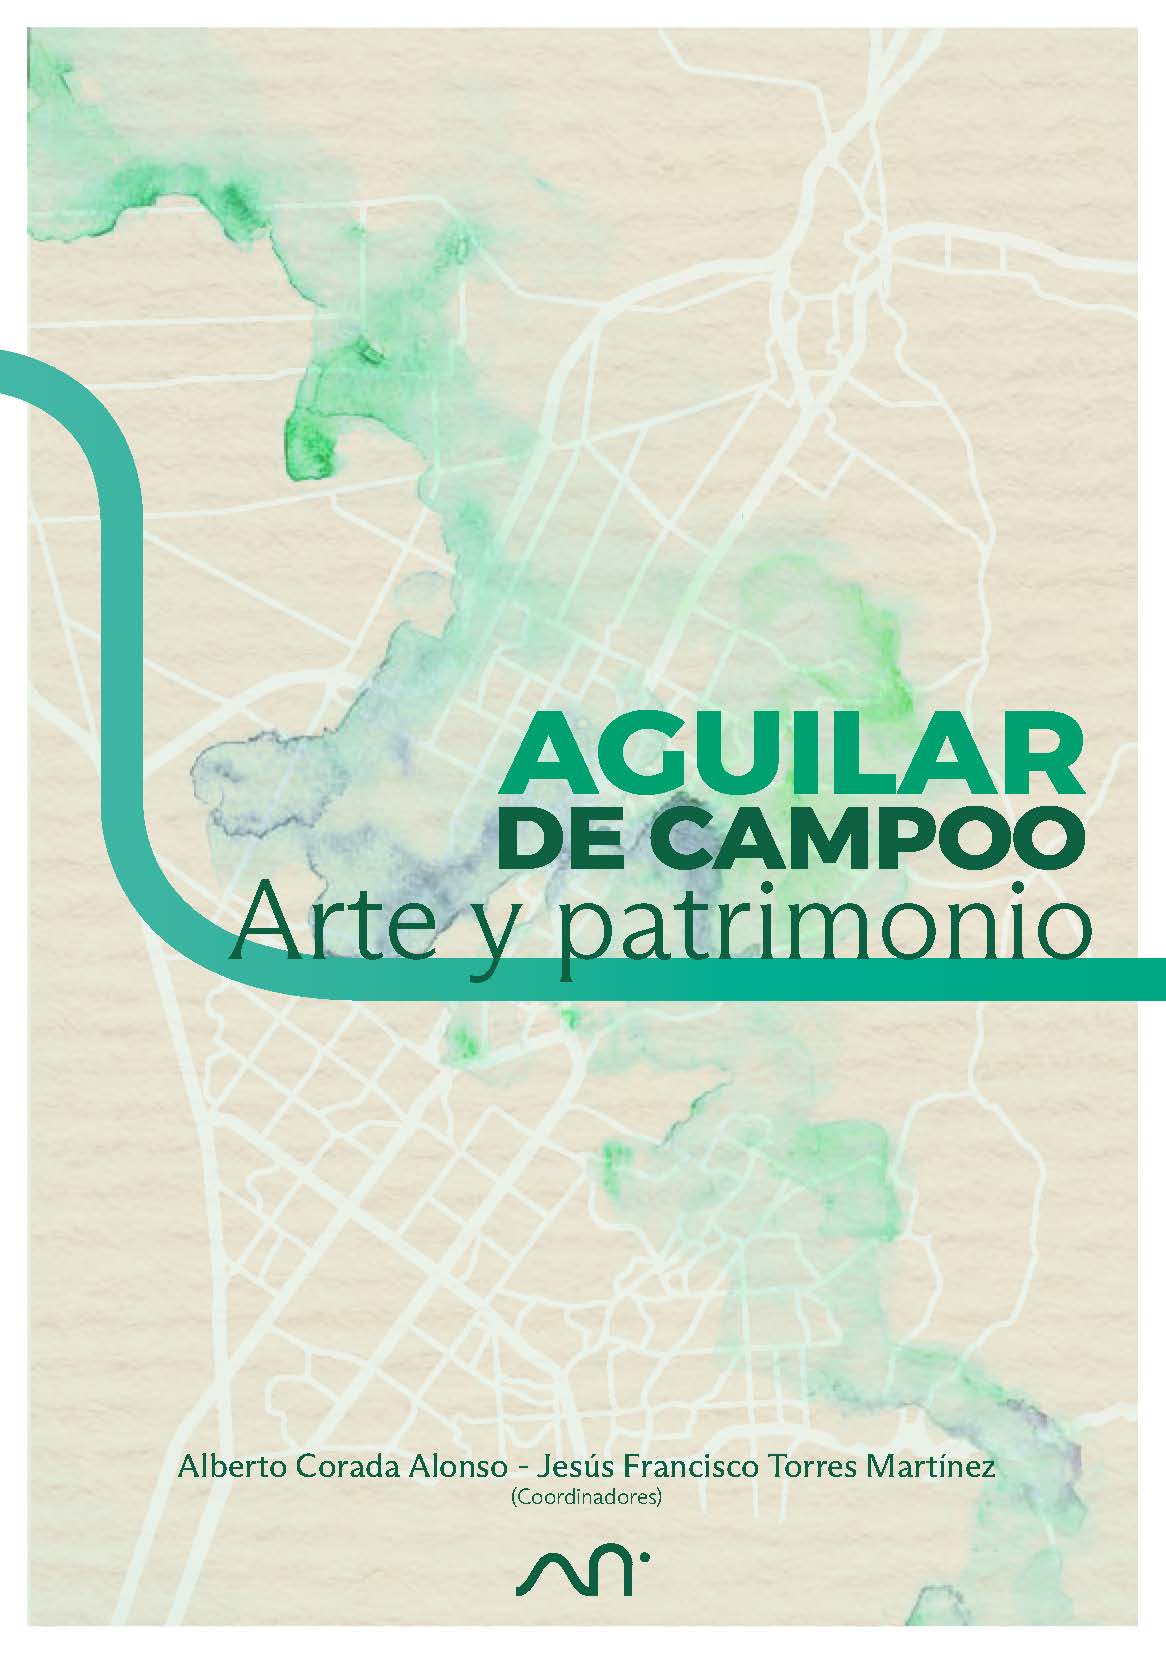 Imagen de portada del libro Aguilar de Campoo